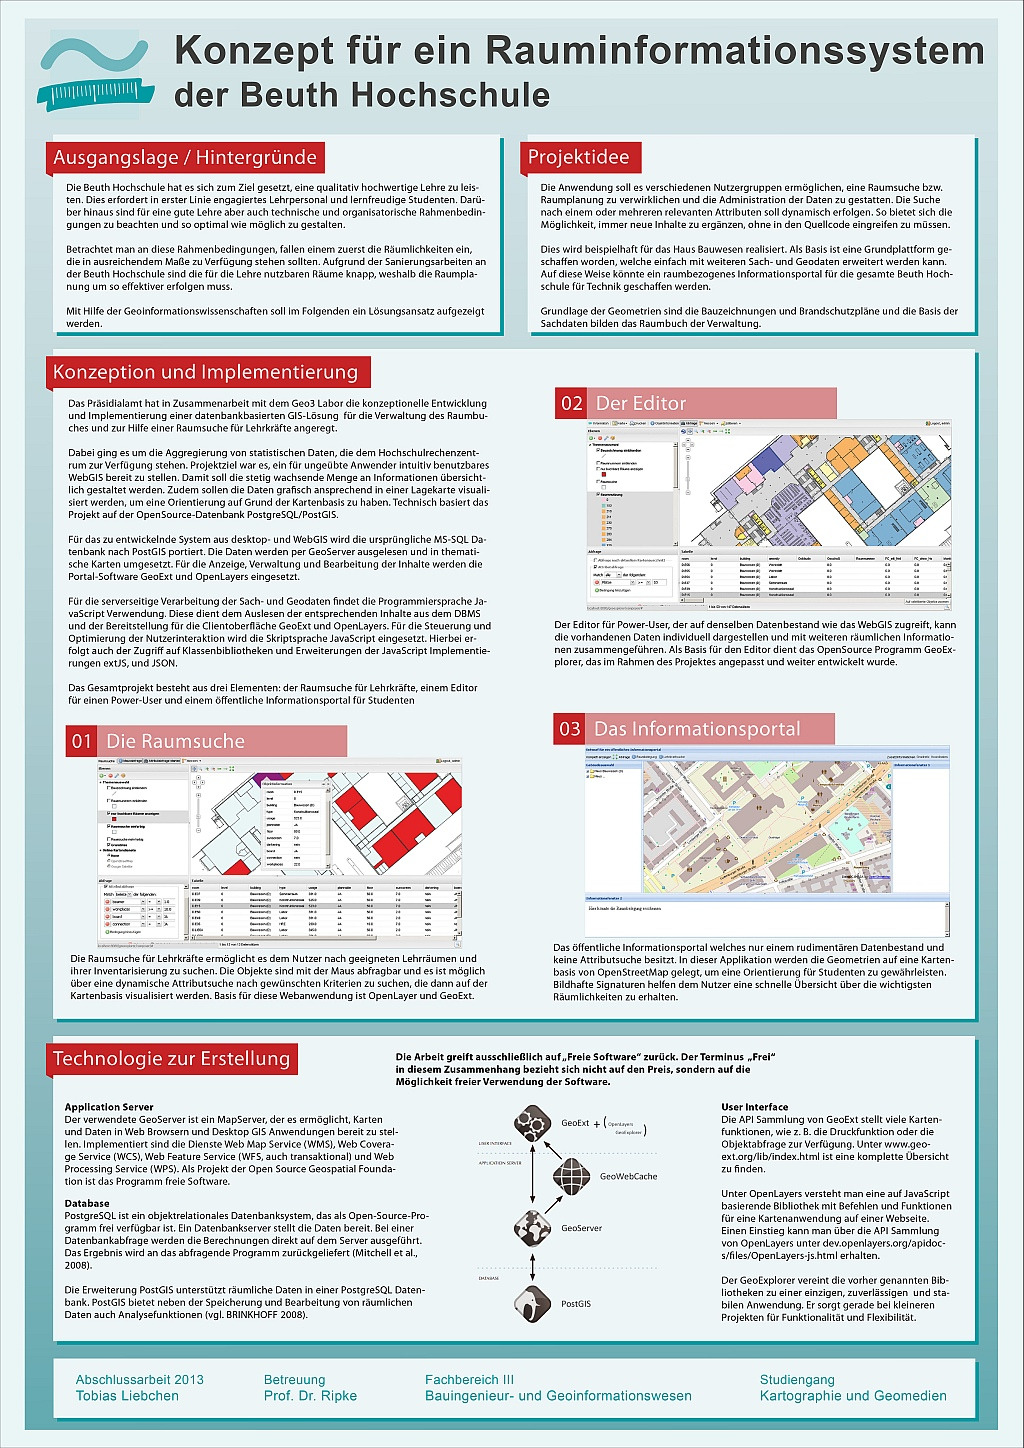 Poster: Konzept für ein Rauminformationssystem der Beuth Hochschule